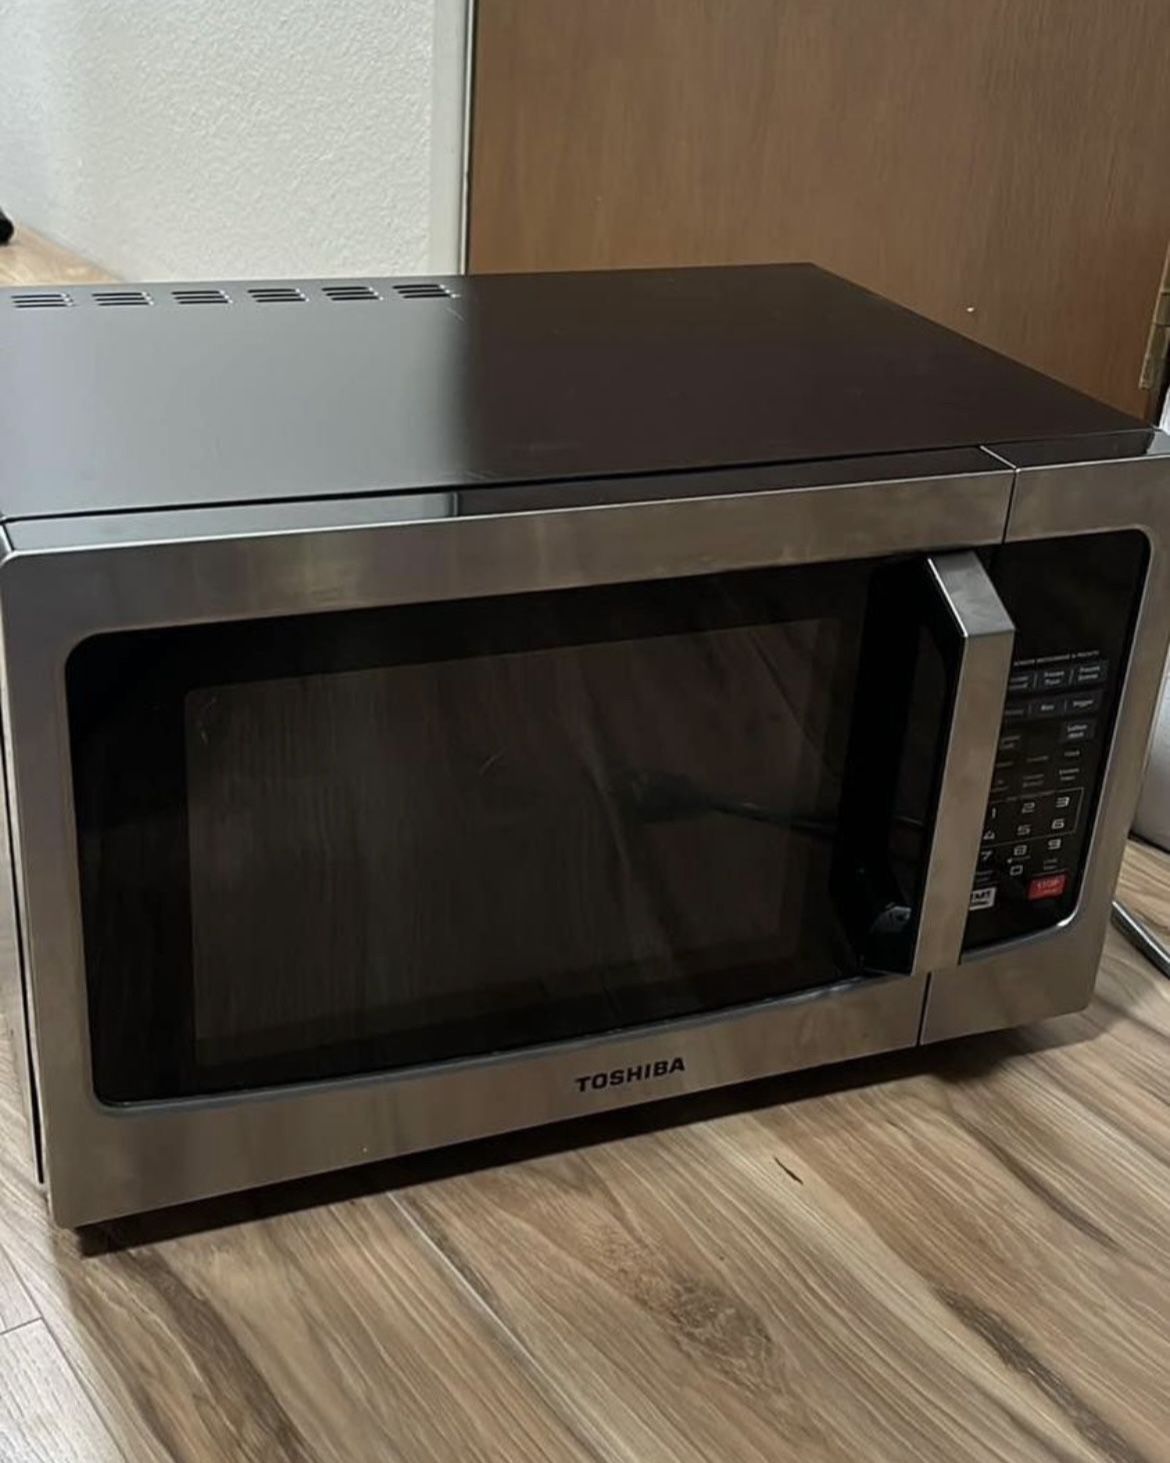 Toshiba Stainless Microwave